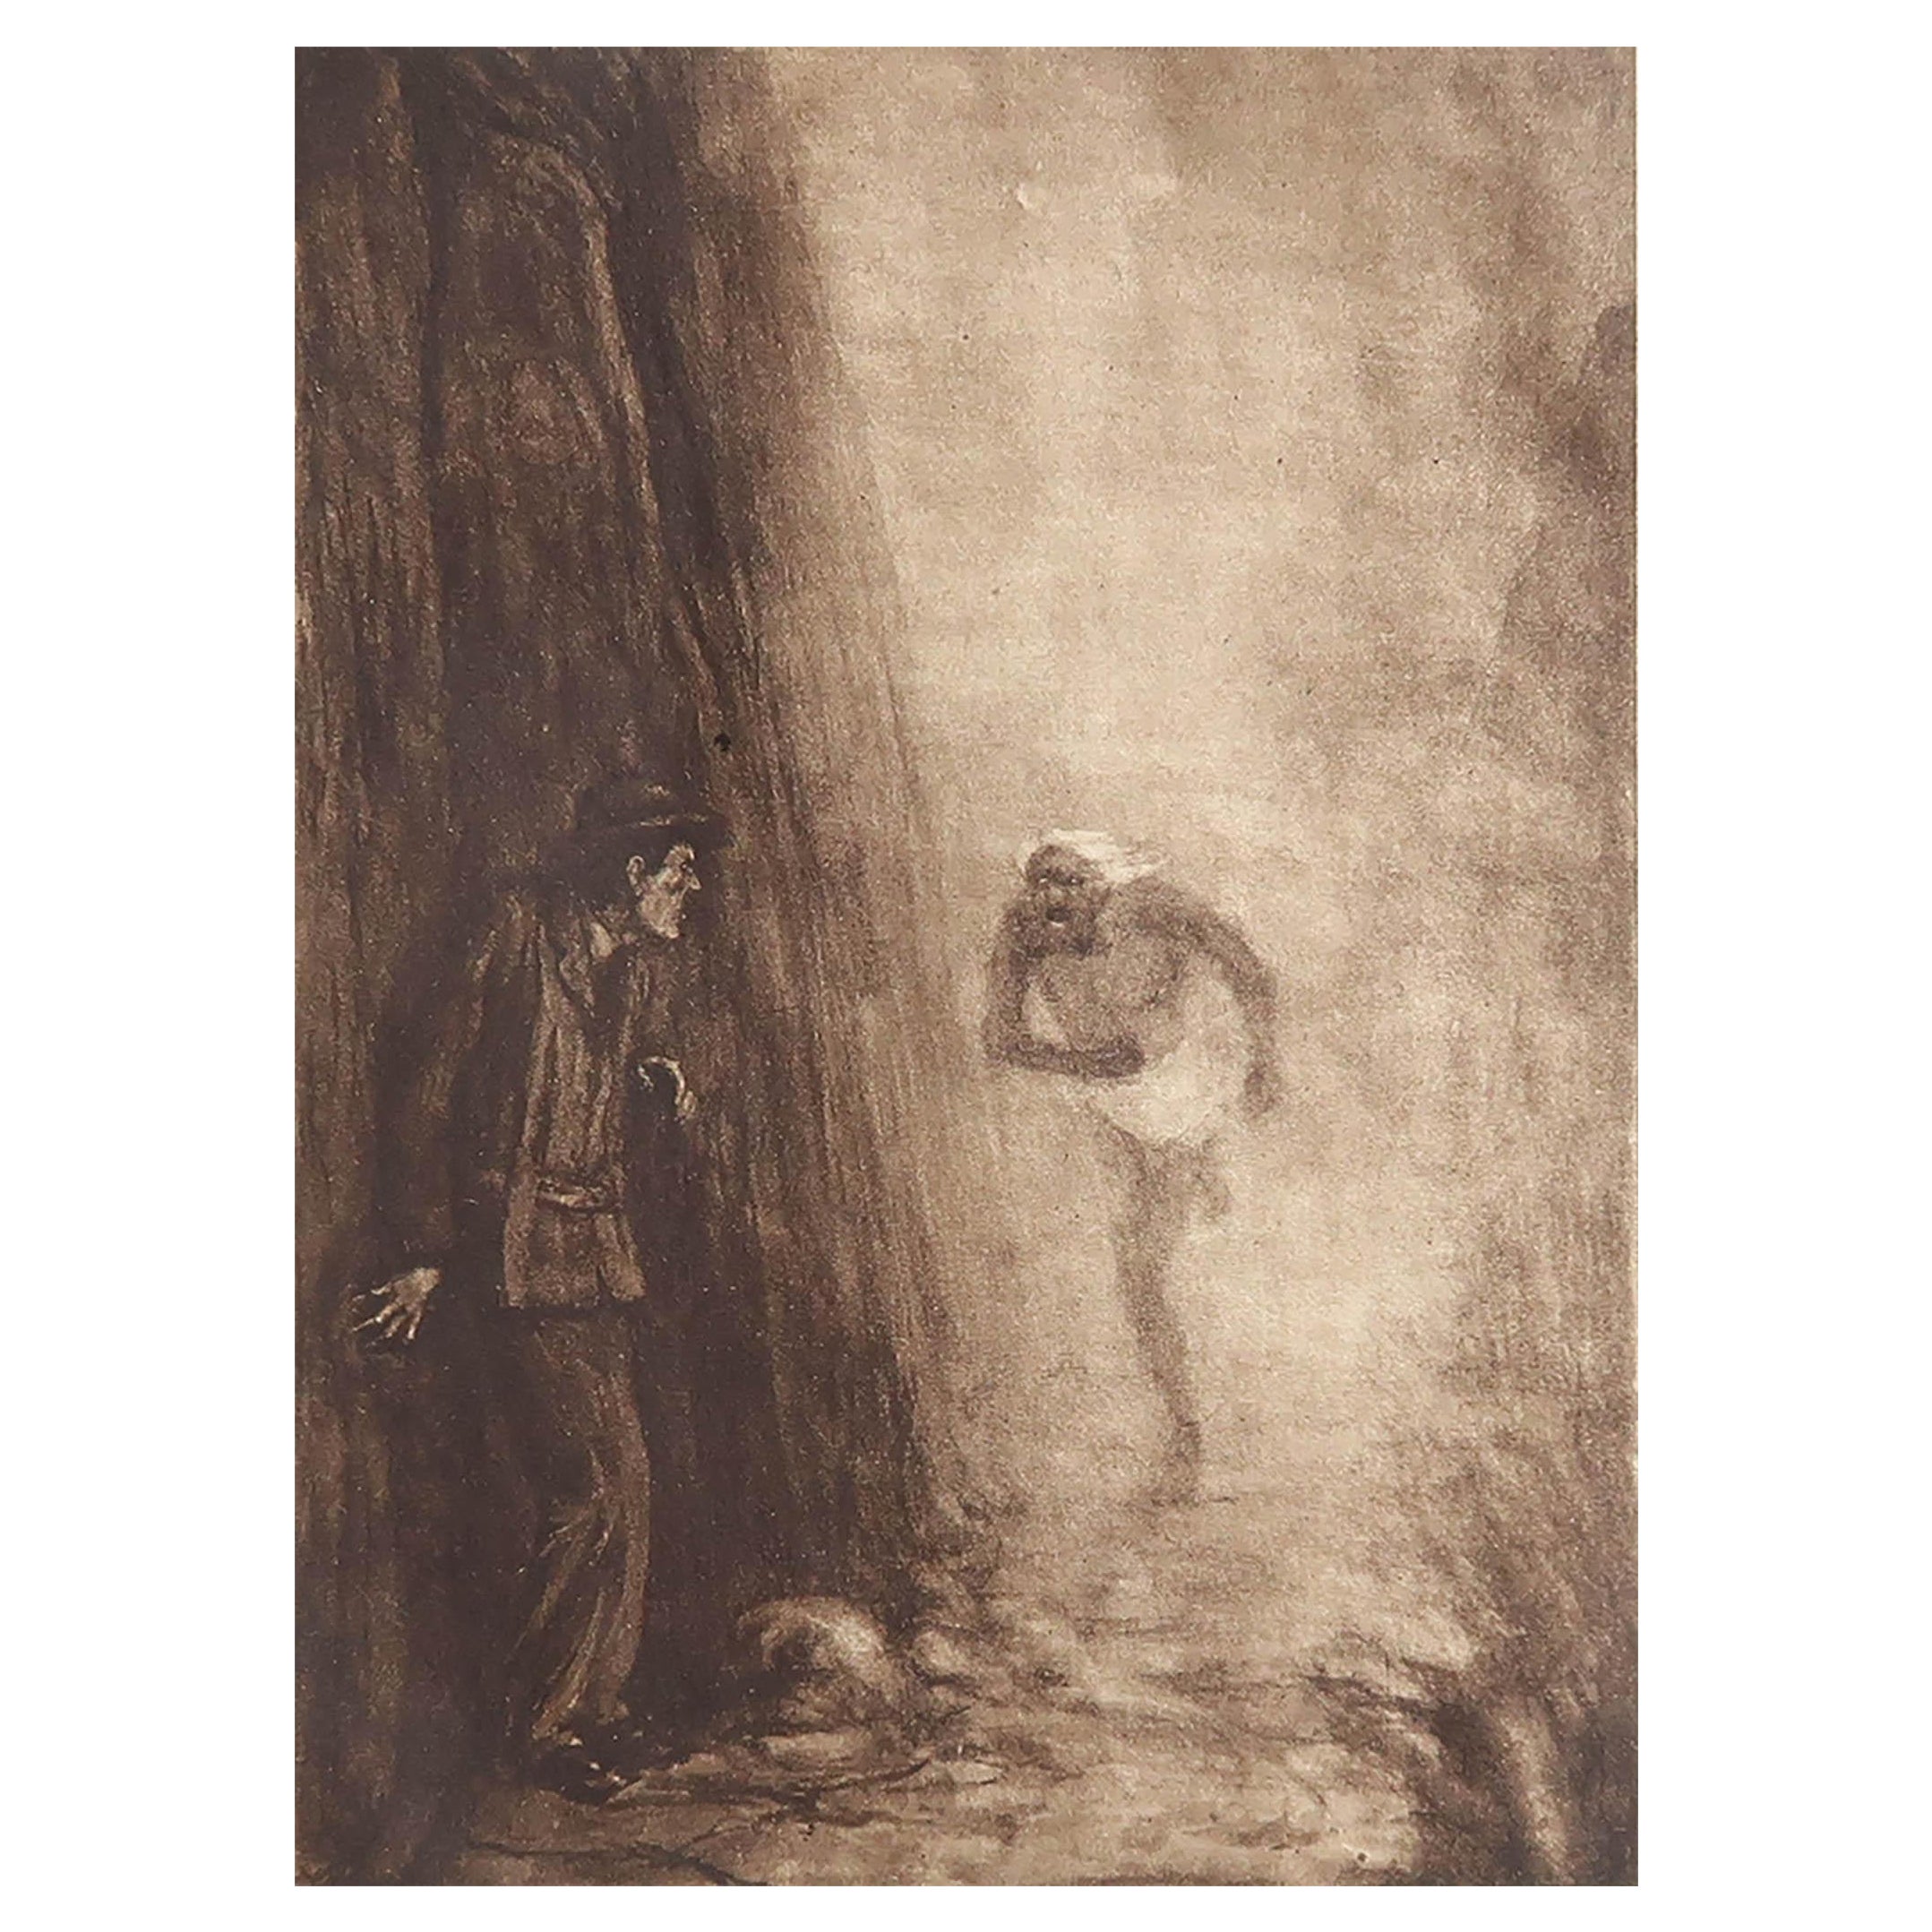 Originaldruck in limitierter Auflage. Frederick S. Coburn, Märchen der zerbrochenen Berge